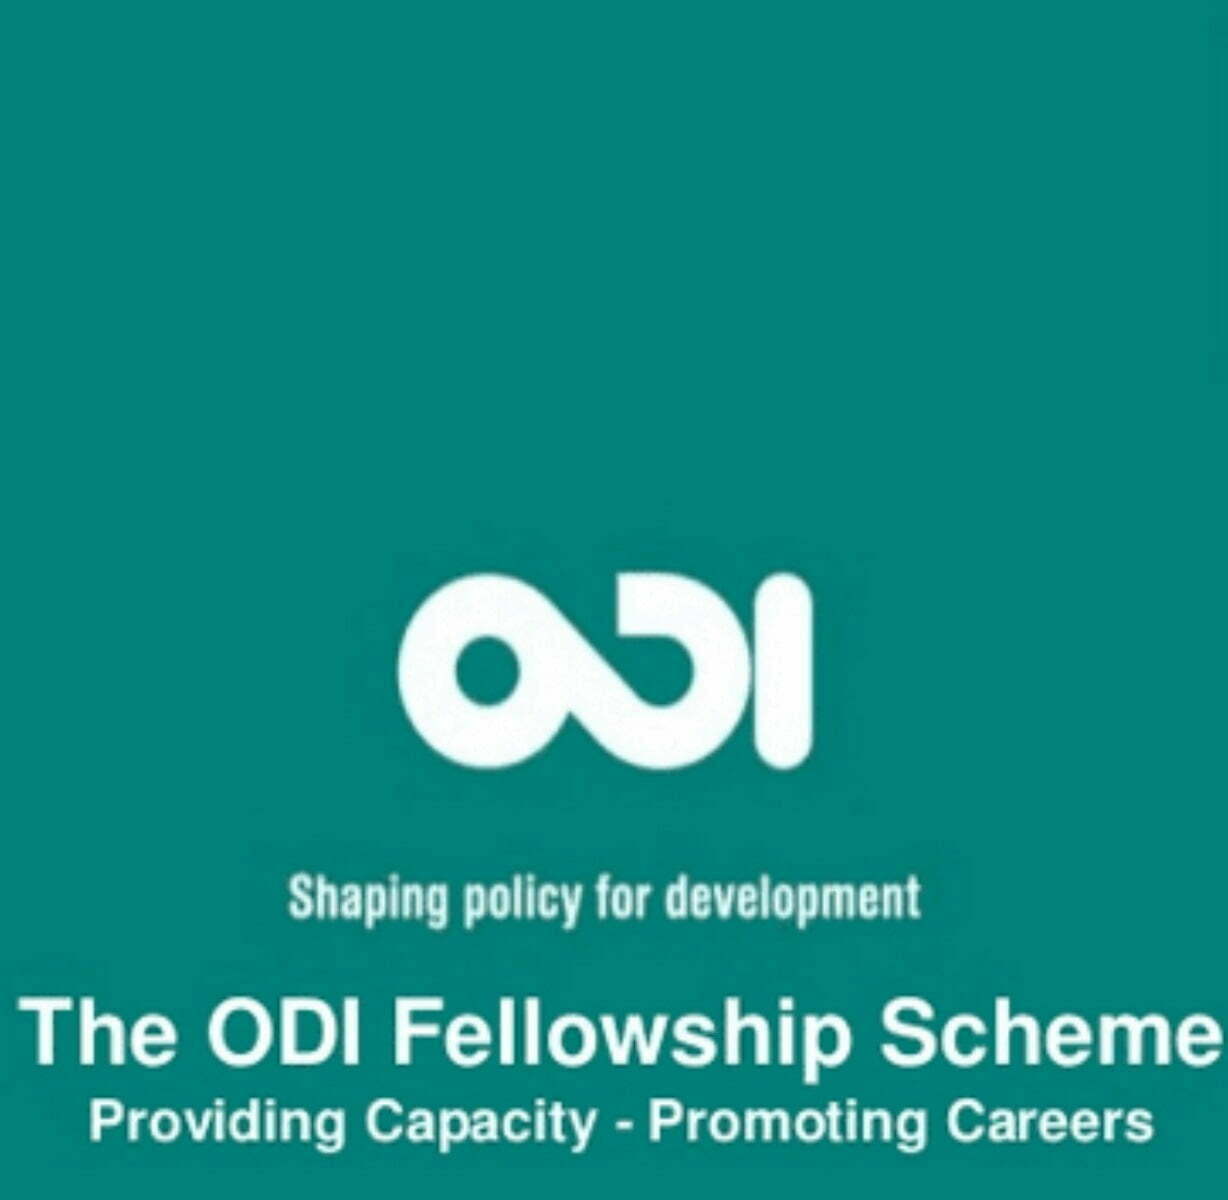 Overseas Development Institute (ODI) Fellowship Scheme 2023